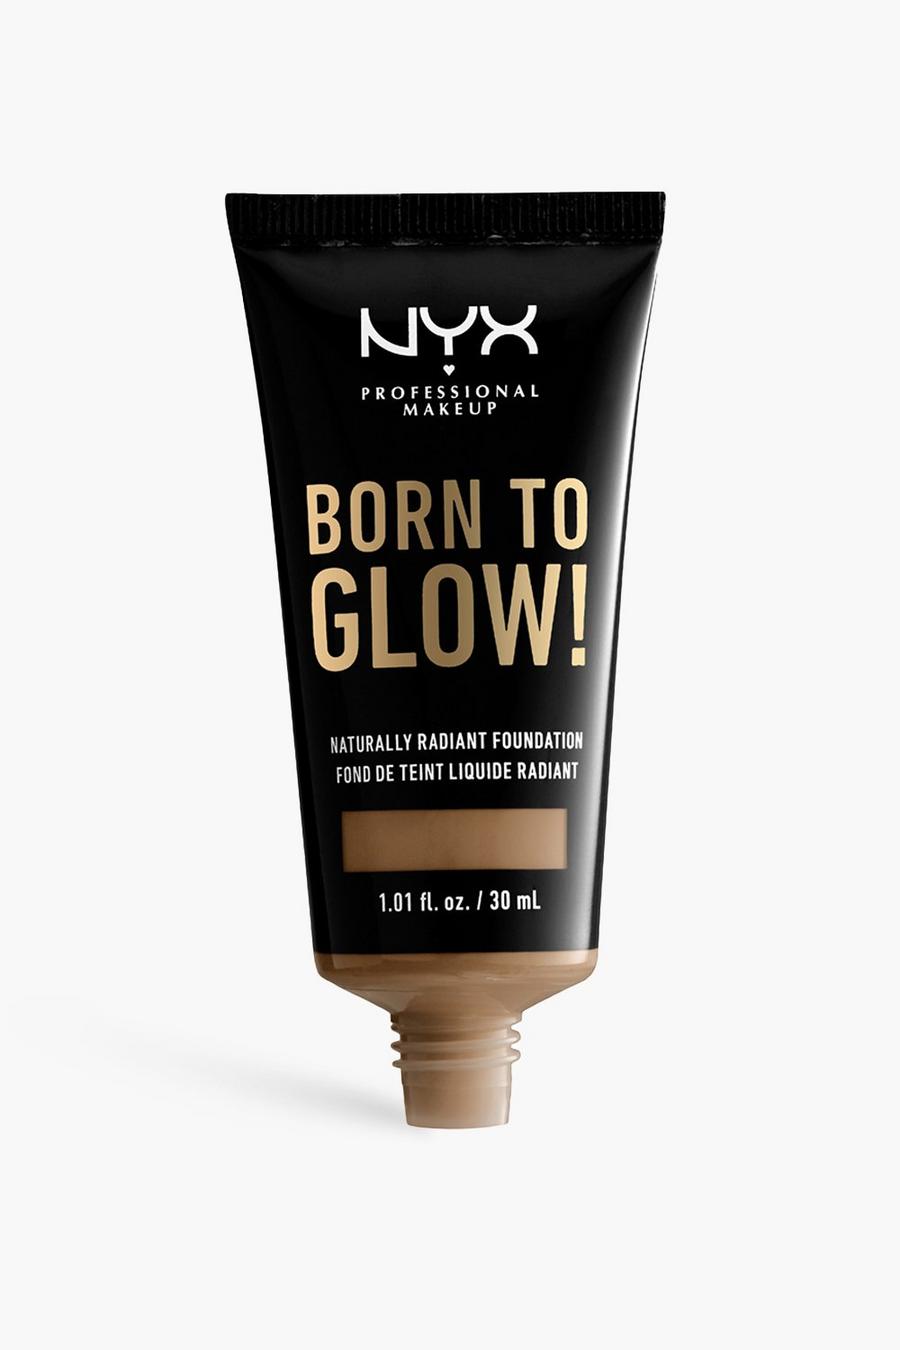 16 mahogany NYX Professional Makeup Born To Glow! Naturally Radiant Foundation